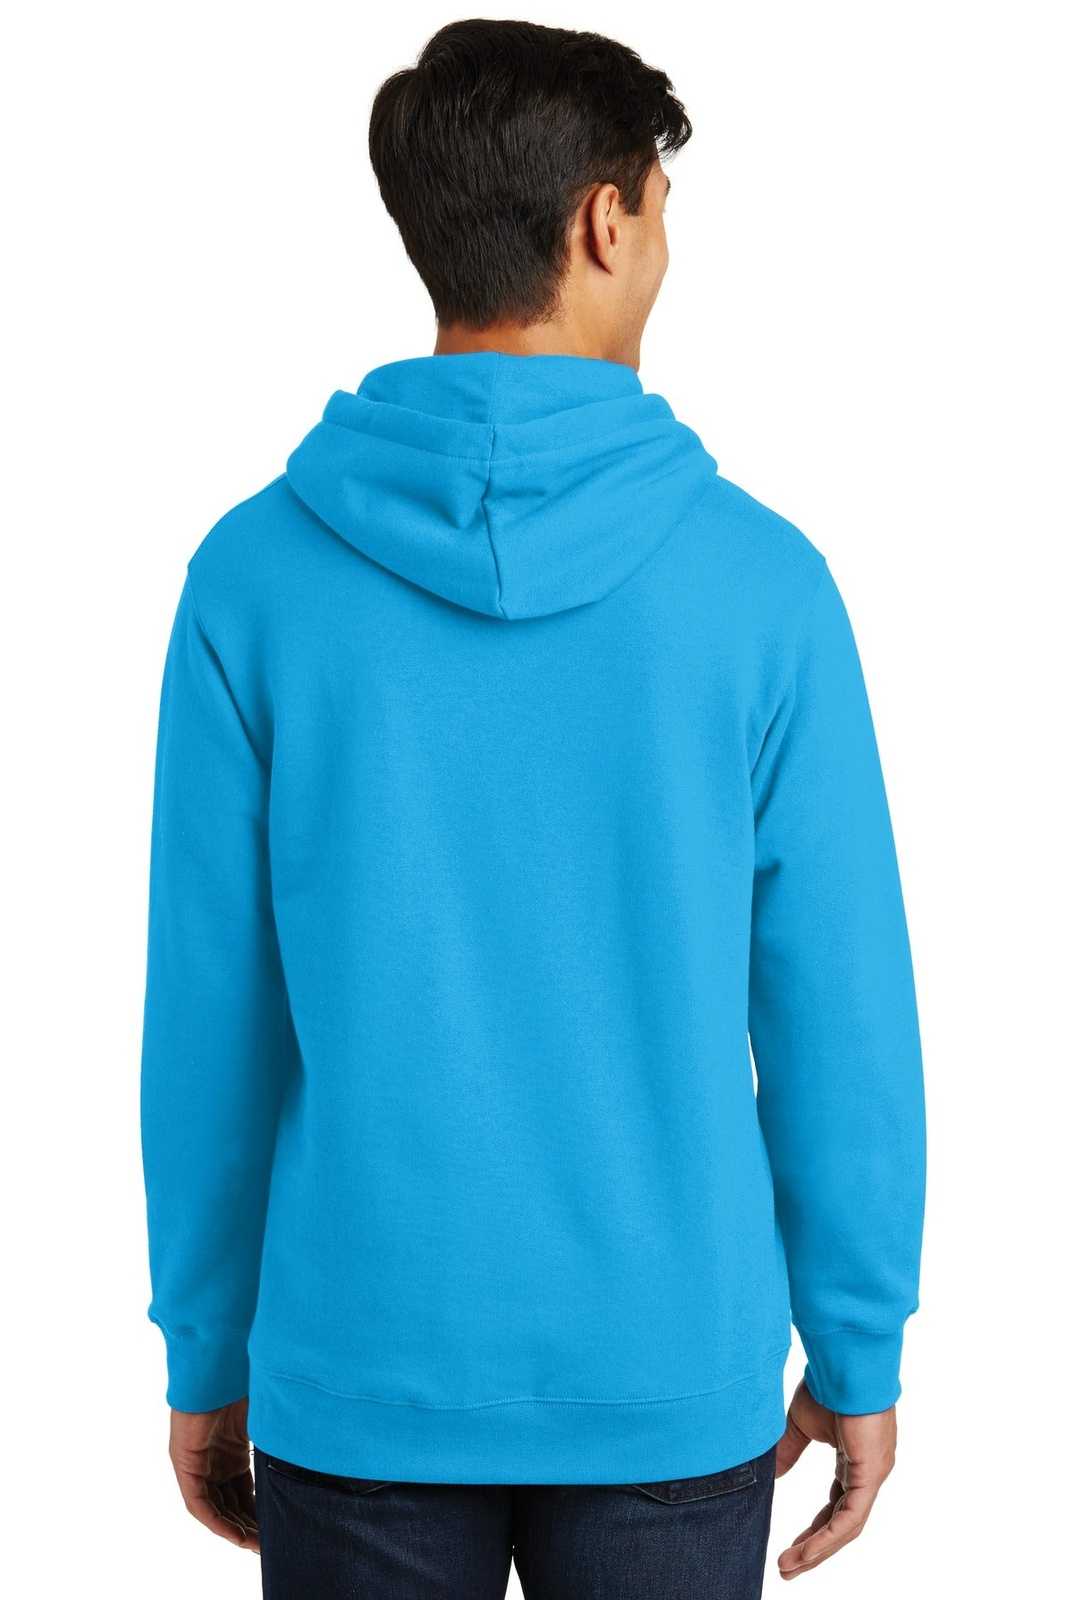 Port & Company PC850H Fan Favorite Fleece Pullover Hooded Sweatshirt - Sapphire - HIT a Double - 1